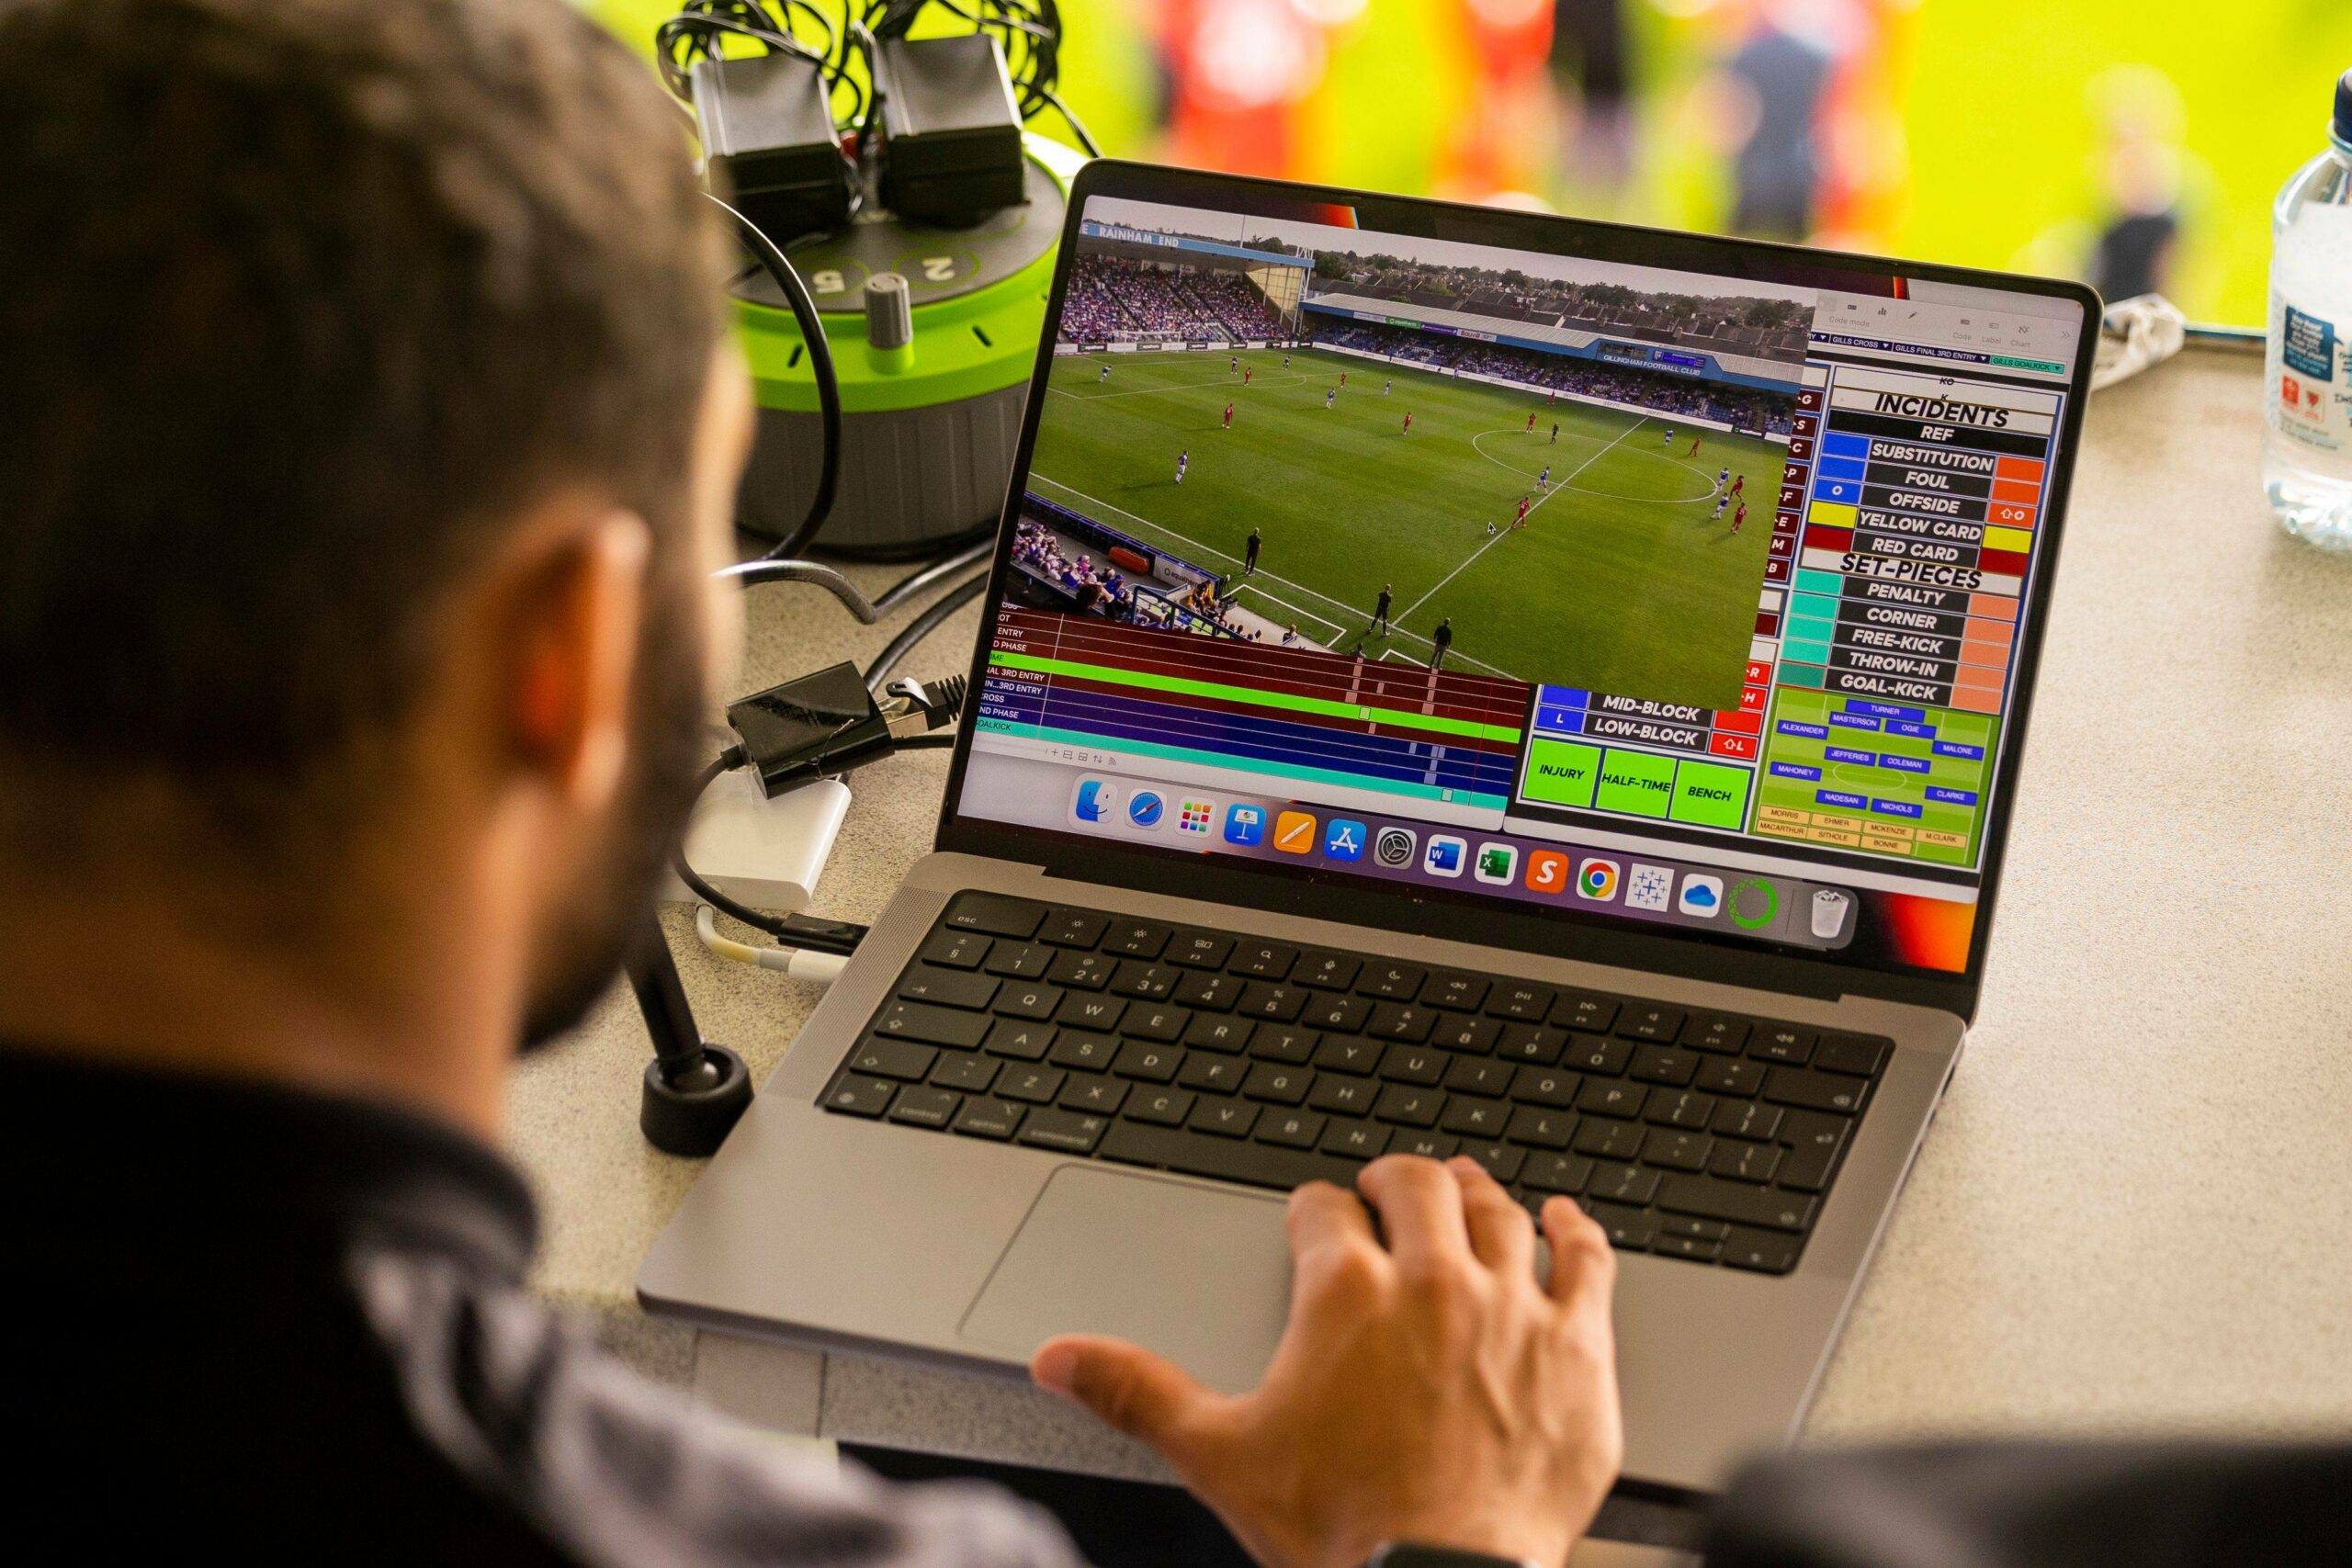 Ein Laptop zur Video-Analyse eines Fußballspiels